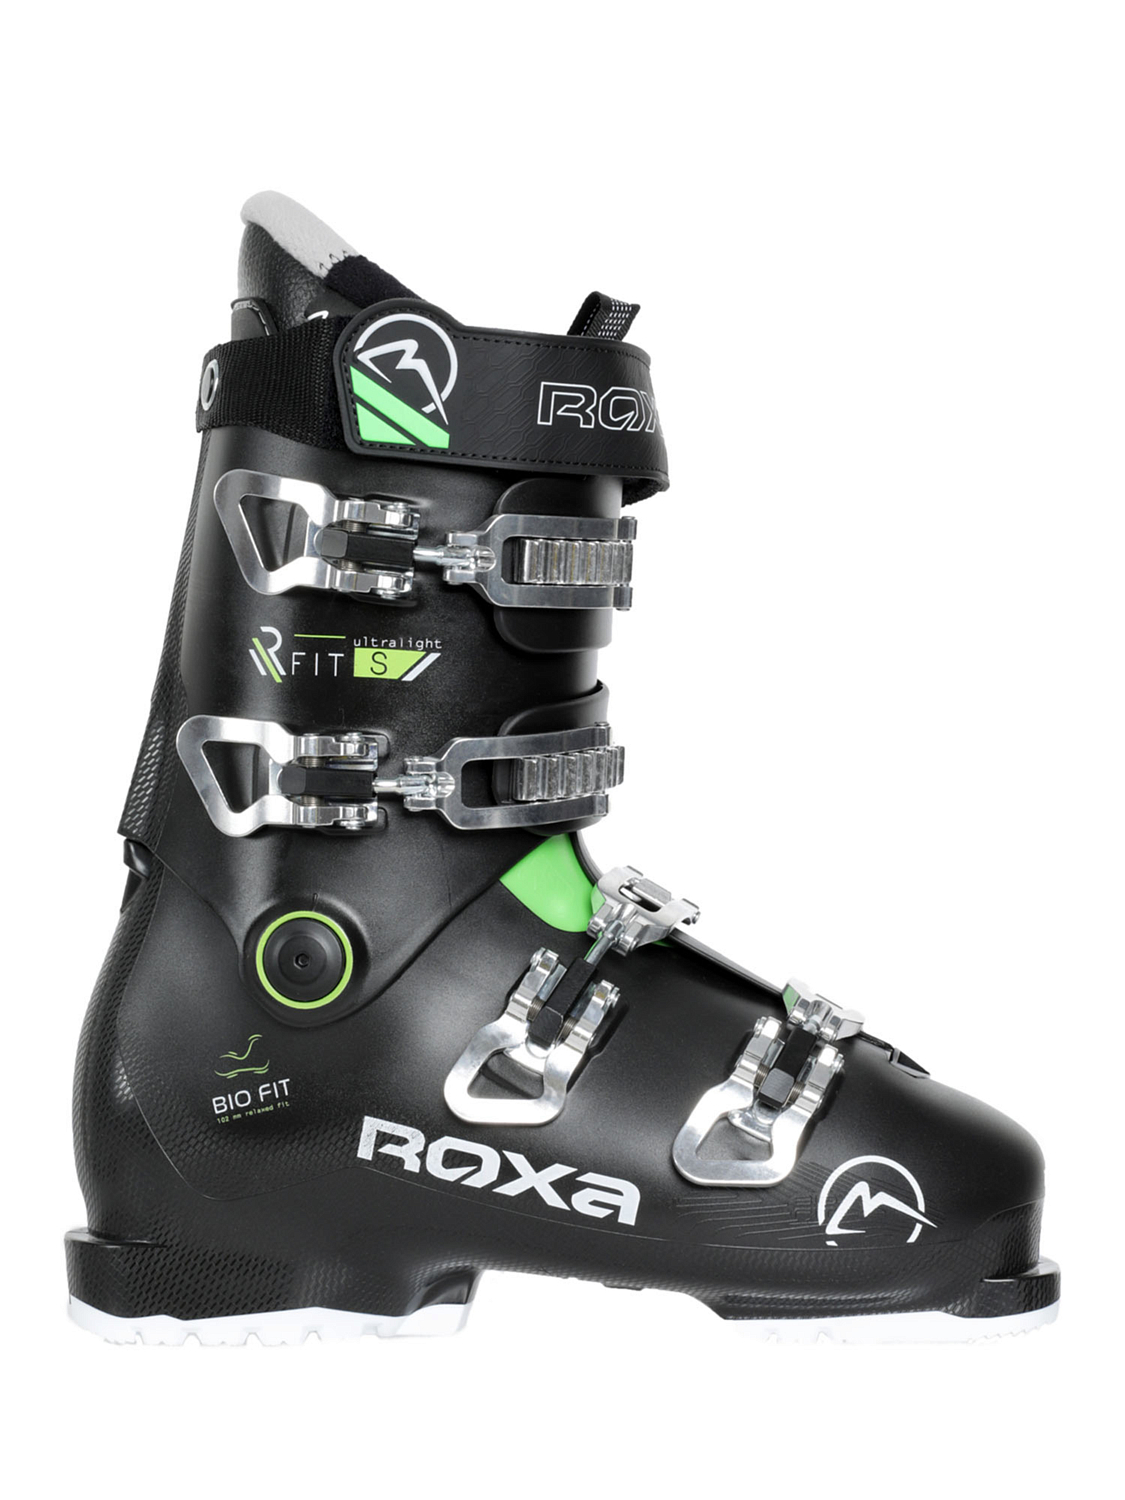 Горнолыжные ботинки ROXA Rfit S Black/Green